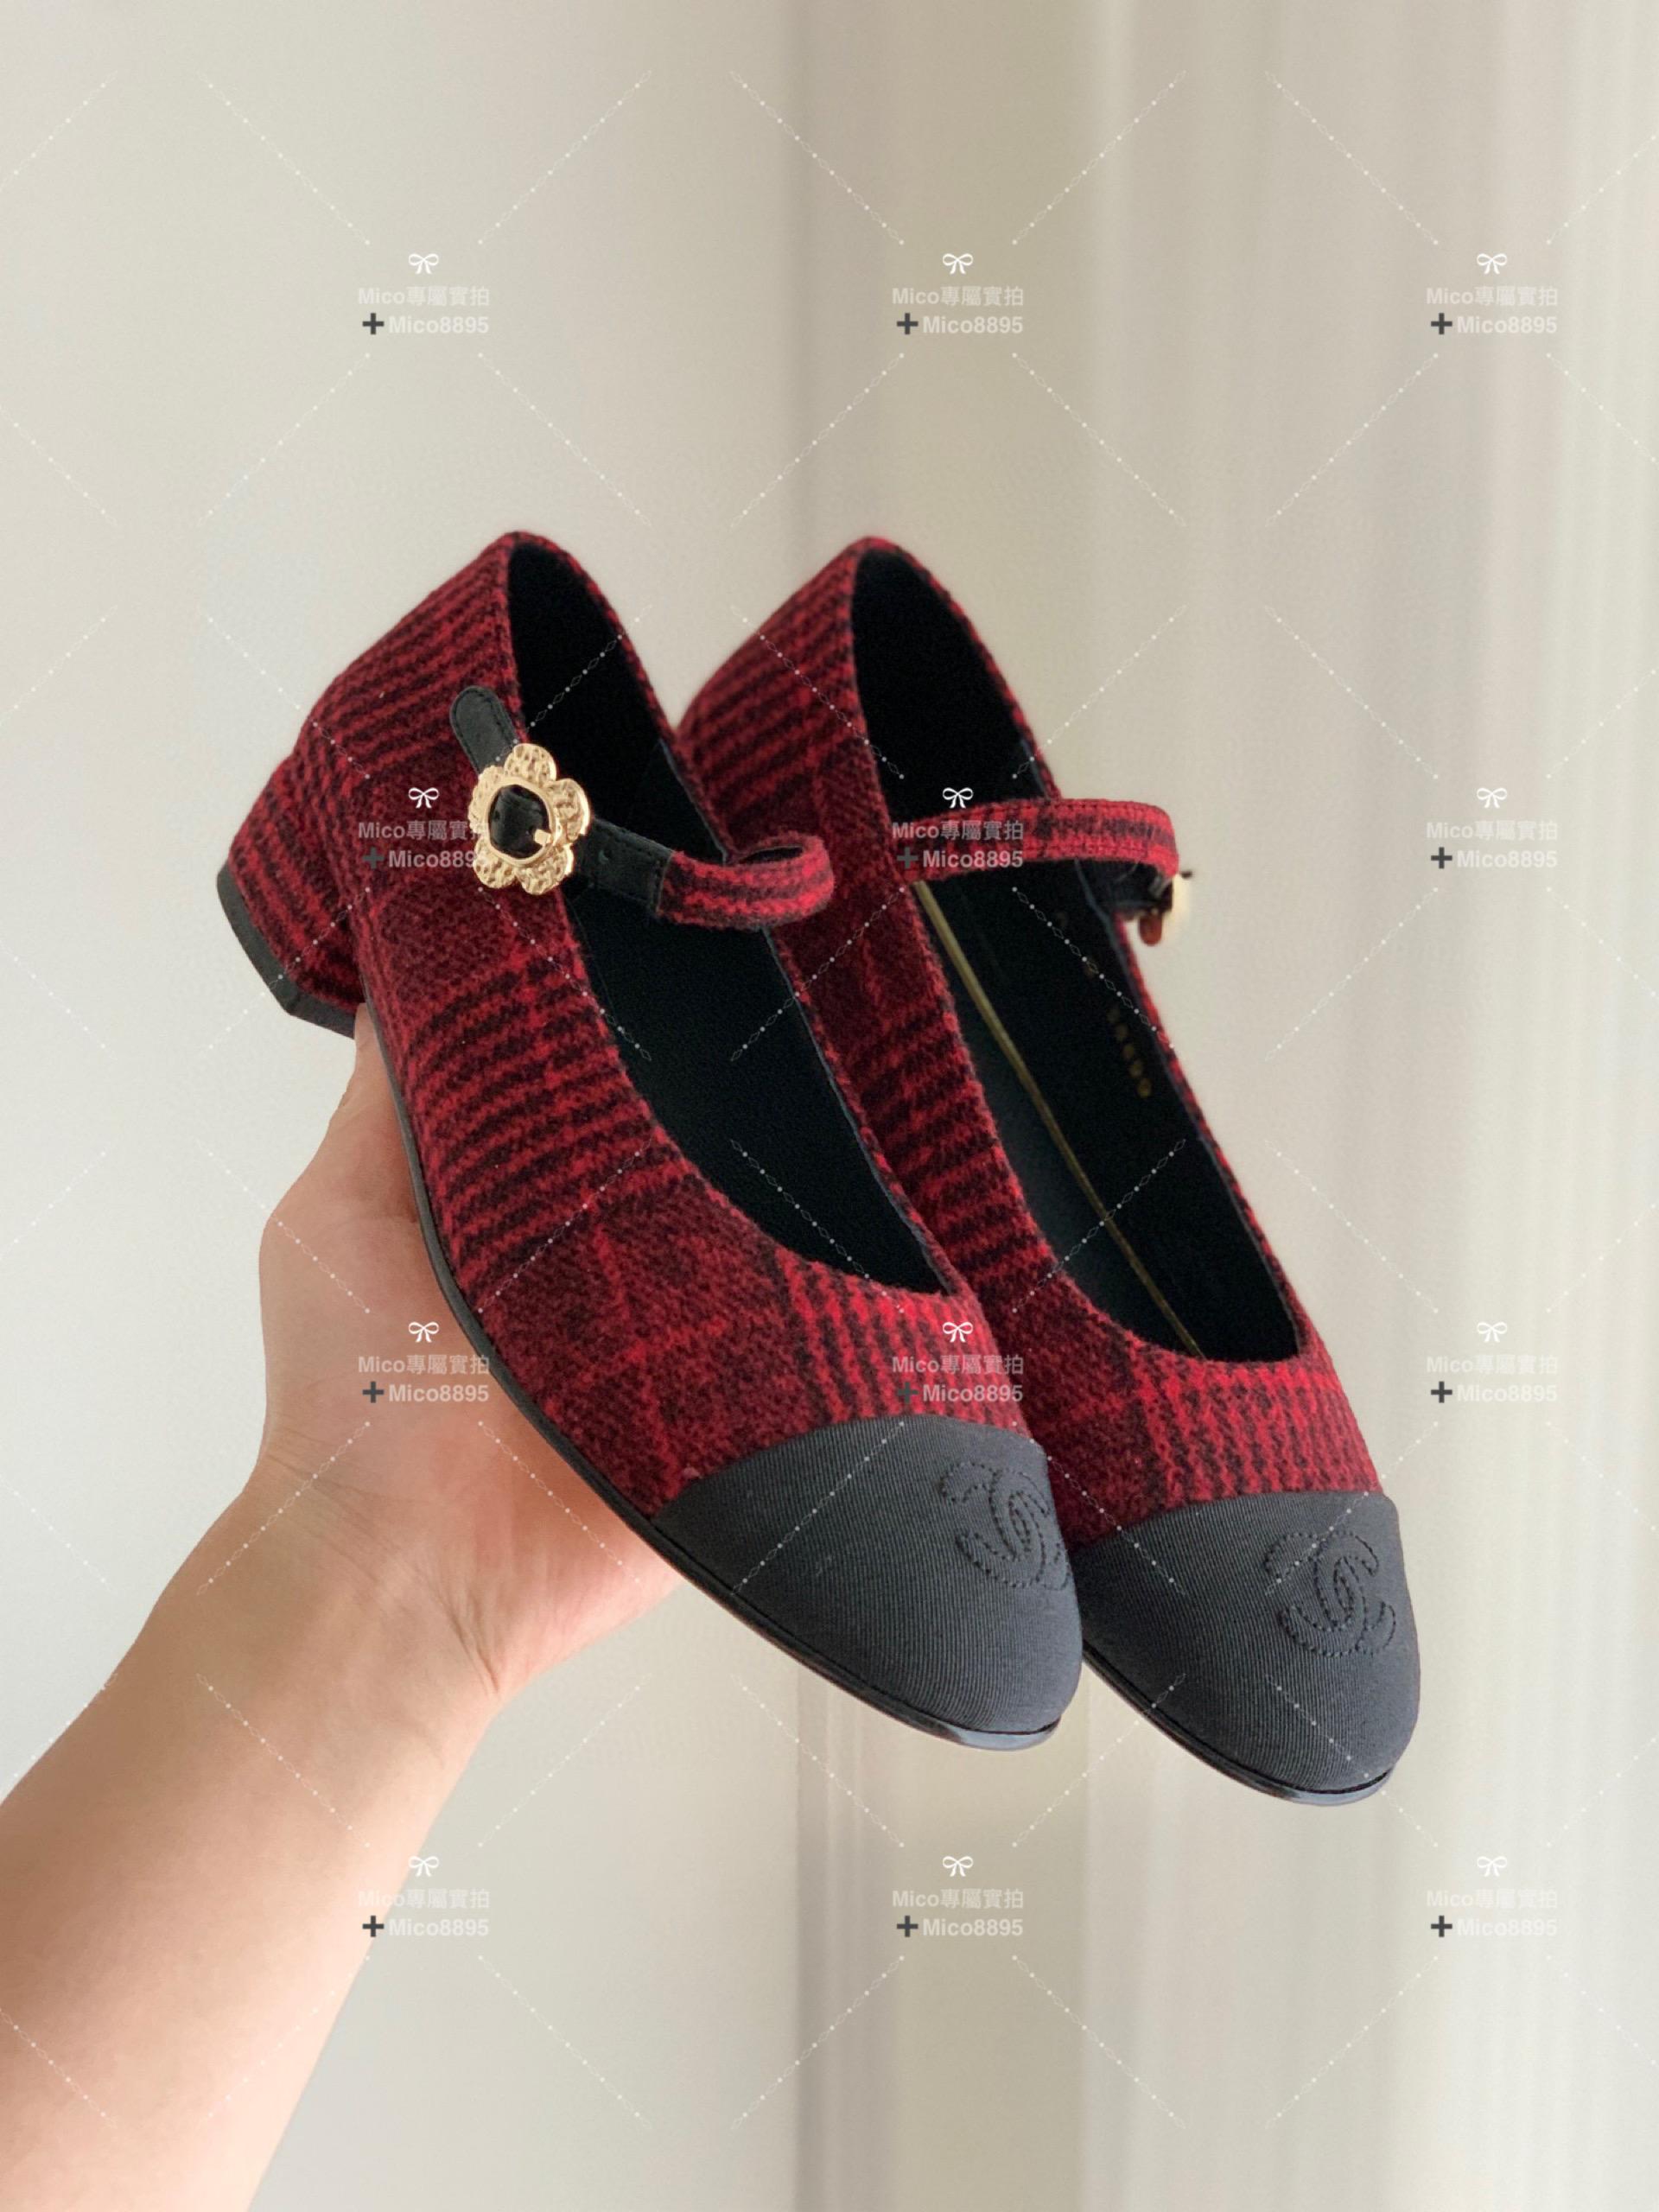 Chanel 英格蘭紅 絨面 側邊小花釦 瑪莉珍平底鞋 繫帶鞋 娃娃鞋